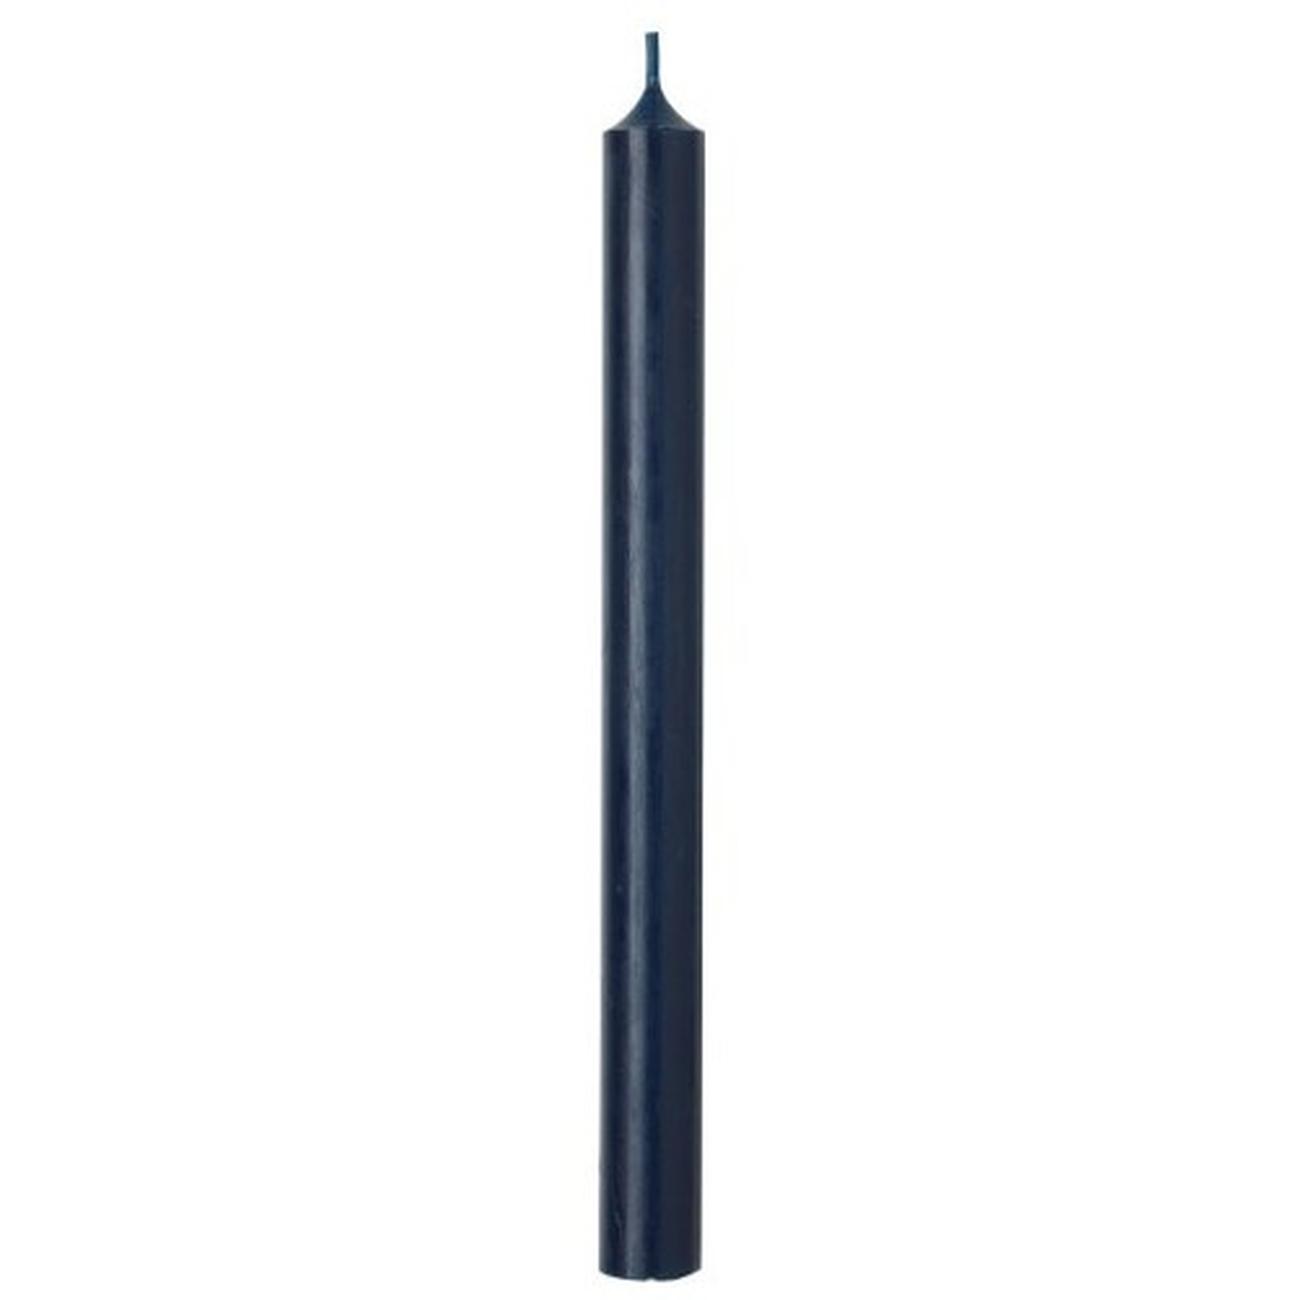 ihr-cylinder-candle-navy-blue - IHR Cylinder Candle Navy